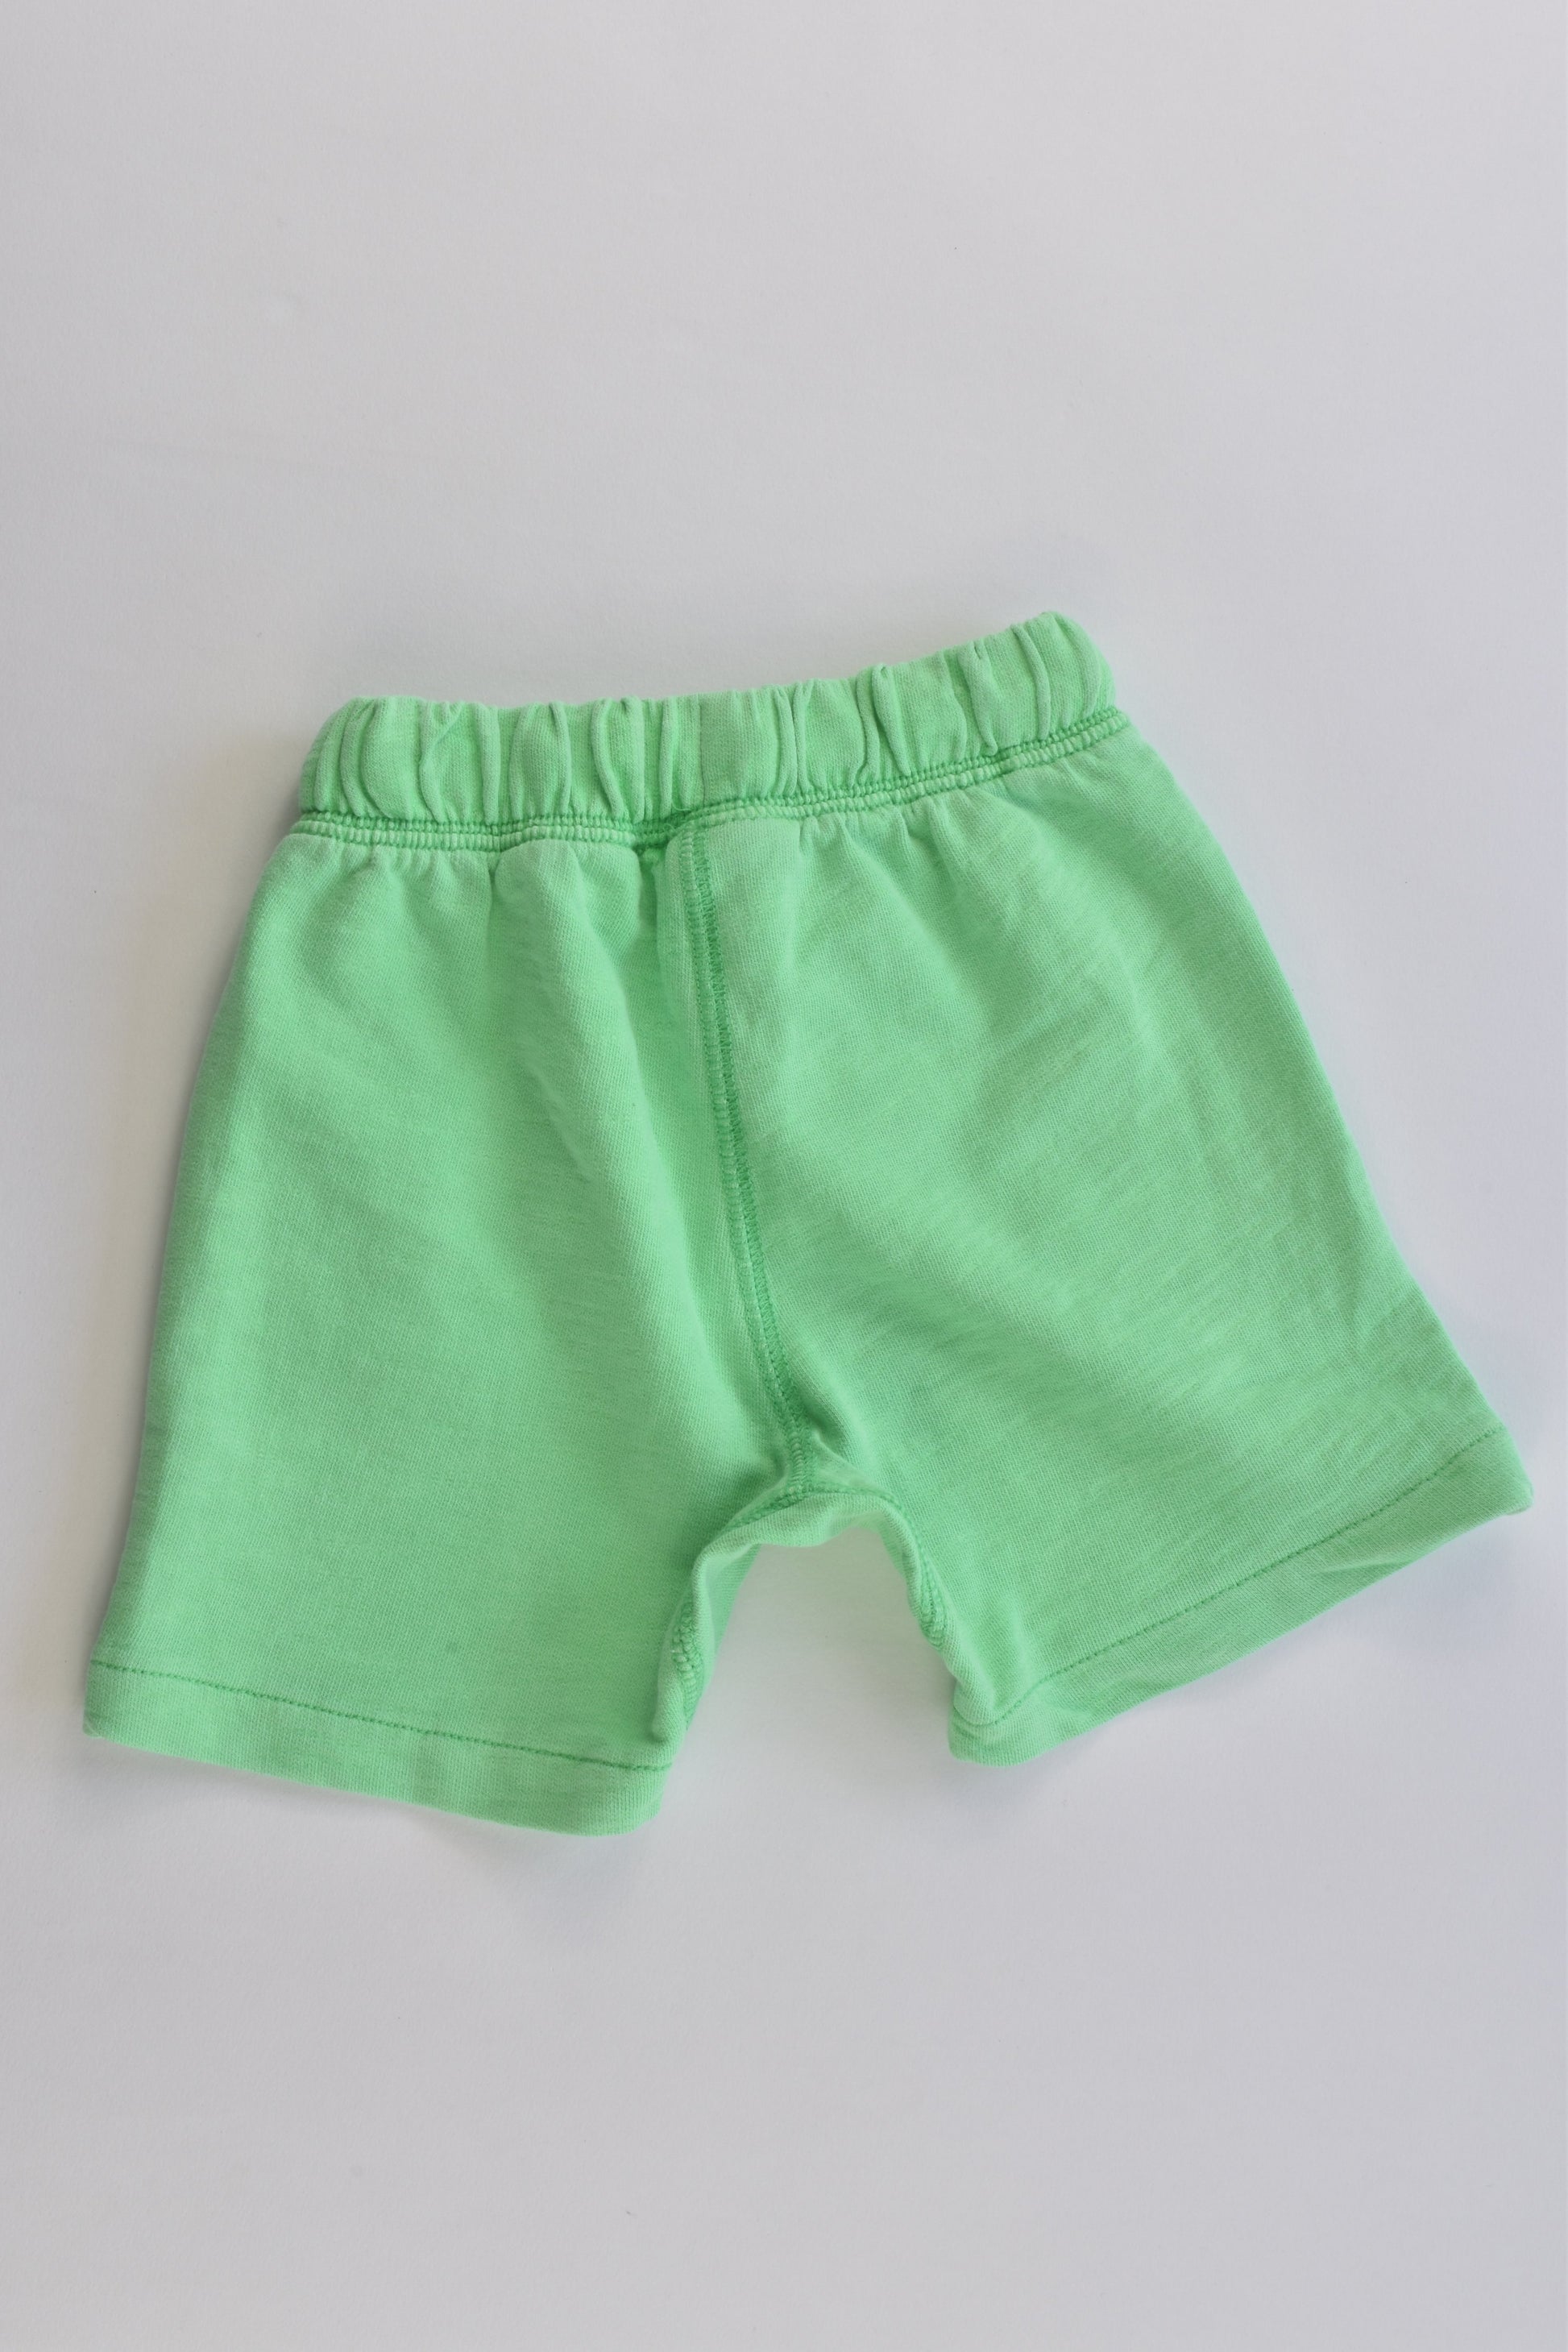 Zara Baby Boy Size 00 (3-6 months, 68 cm) Surfing Pineapple Shorts